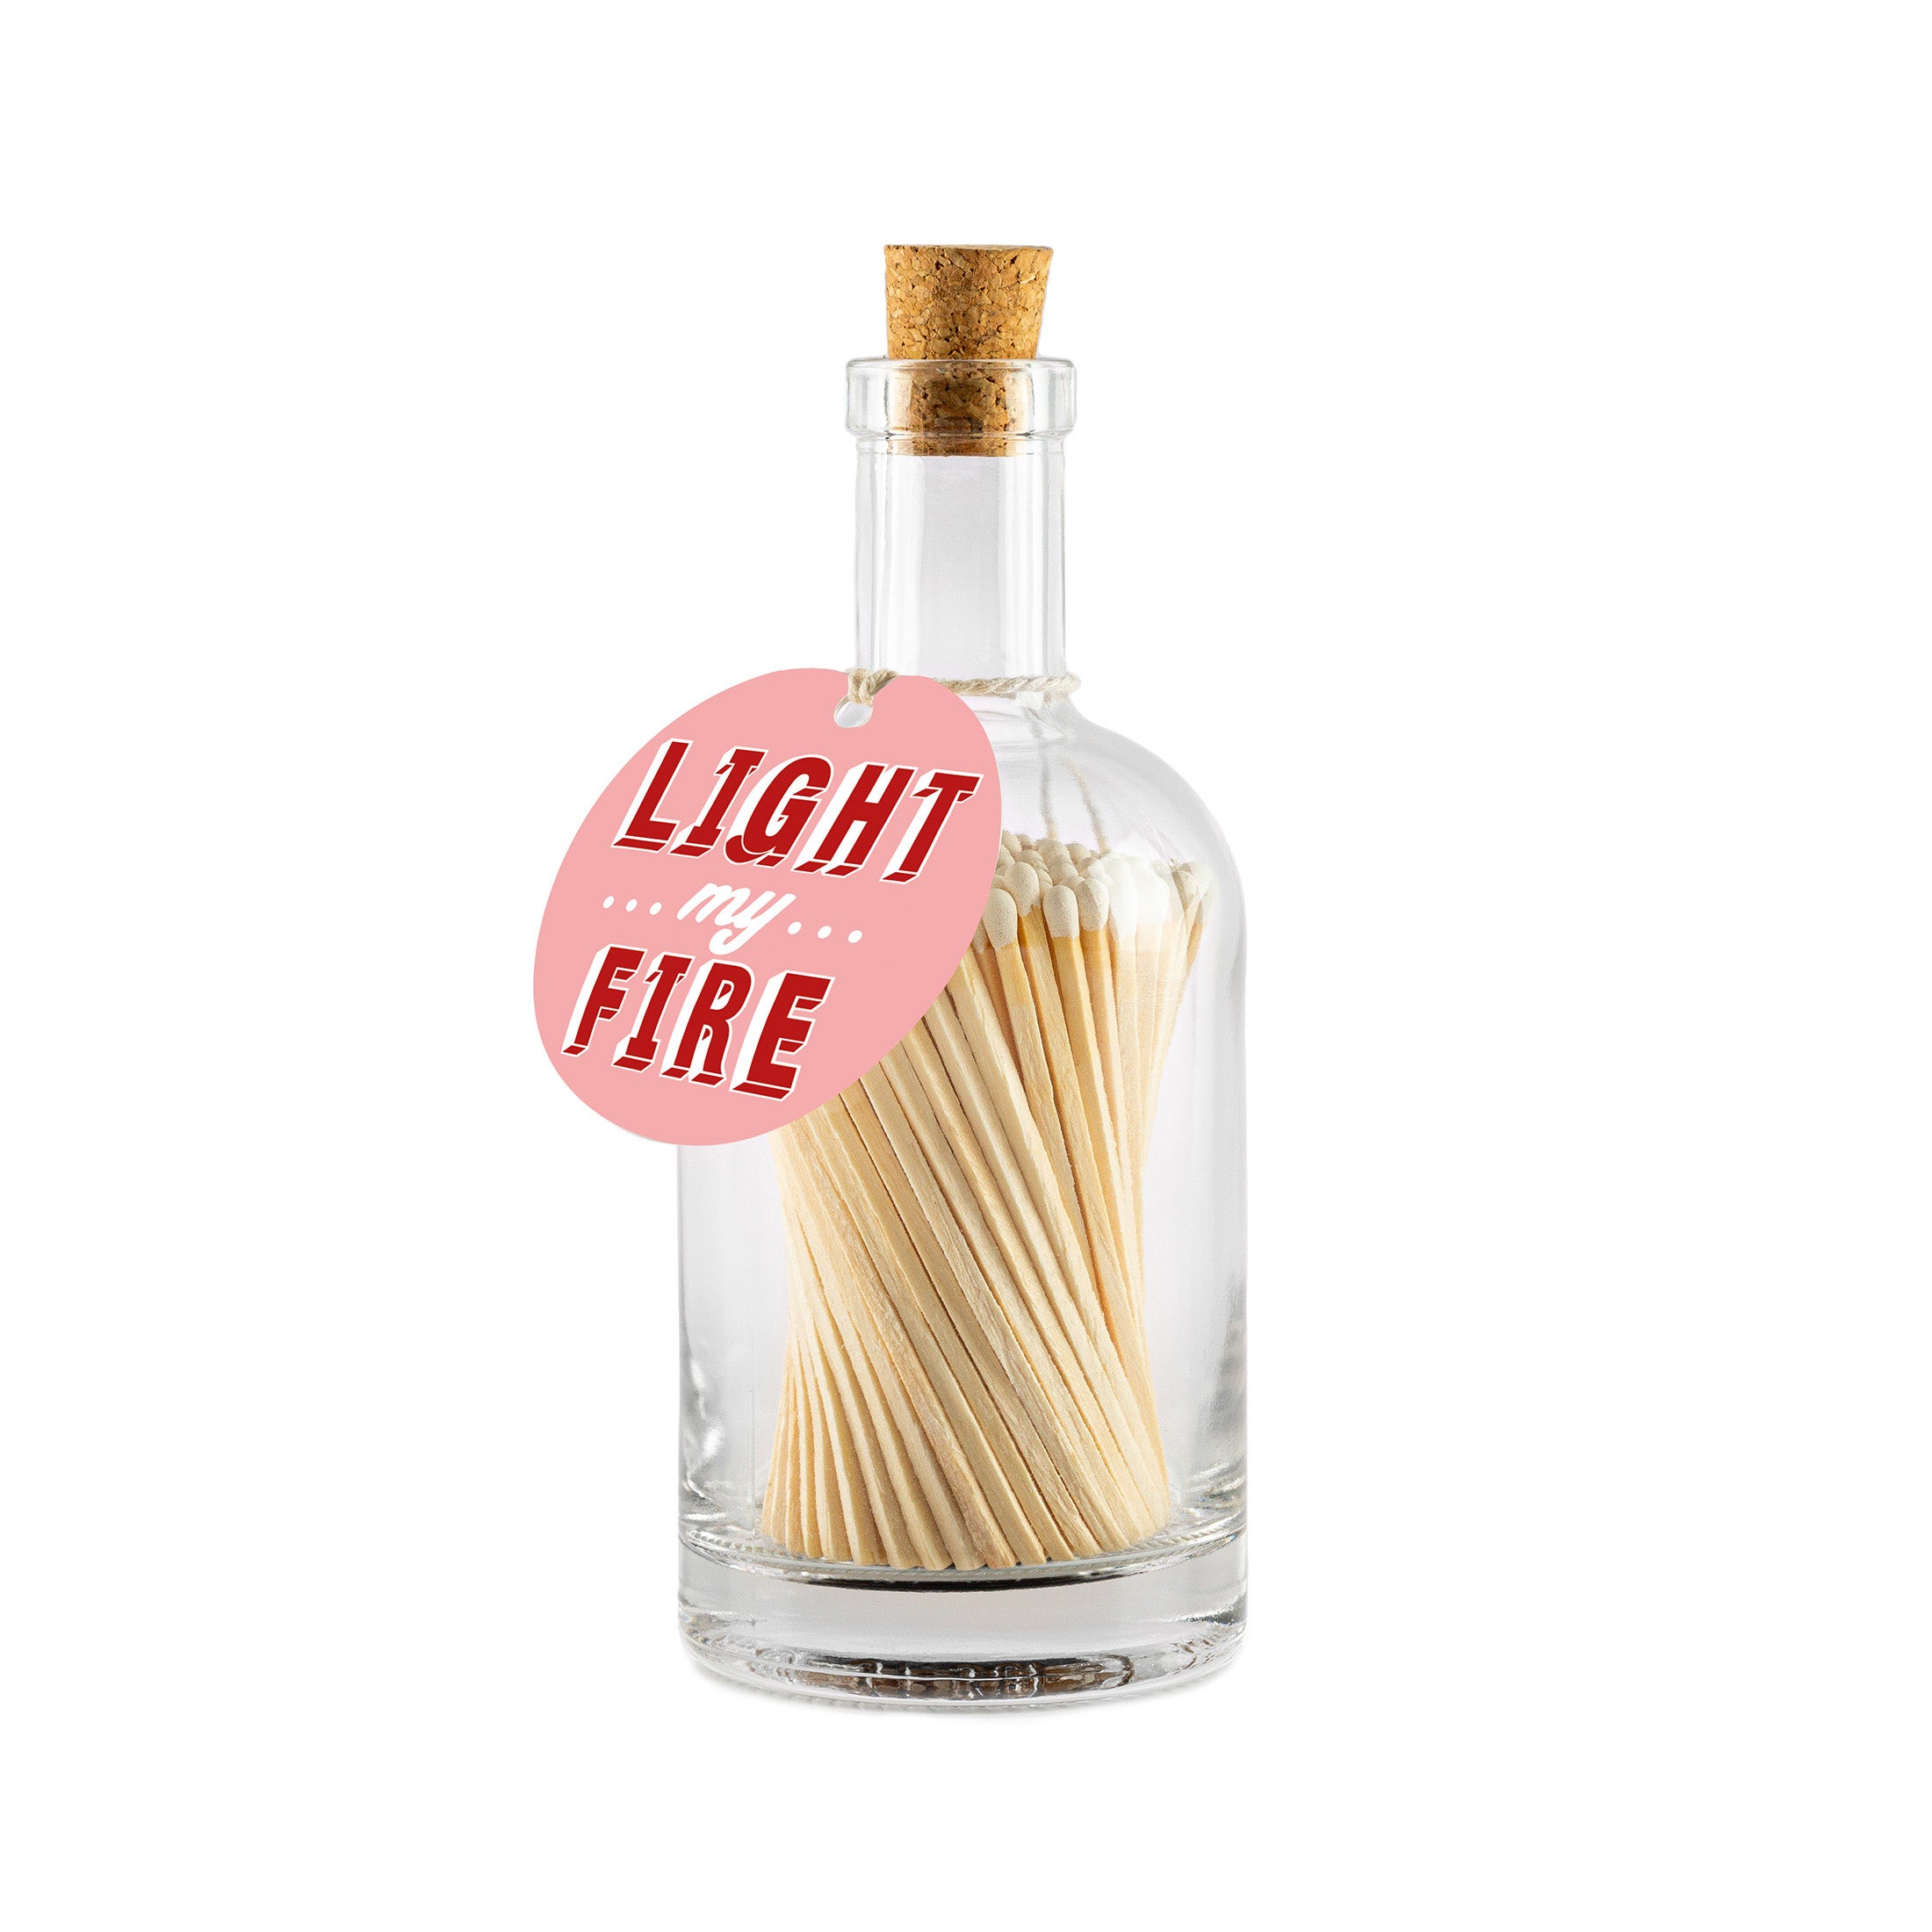 Herring & Bones - Concept Store Joyeux - Archivist Gallery - Allumettes - Bouteille d'allumettes "Light My Fire"